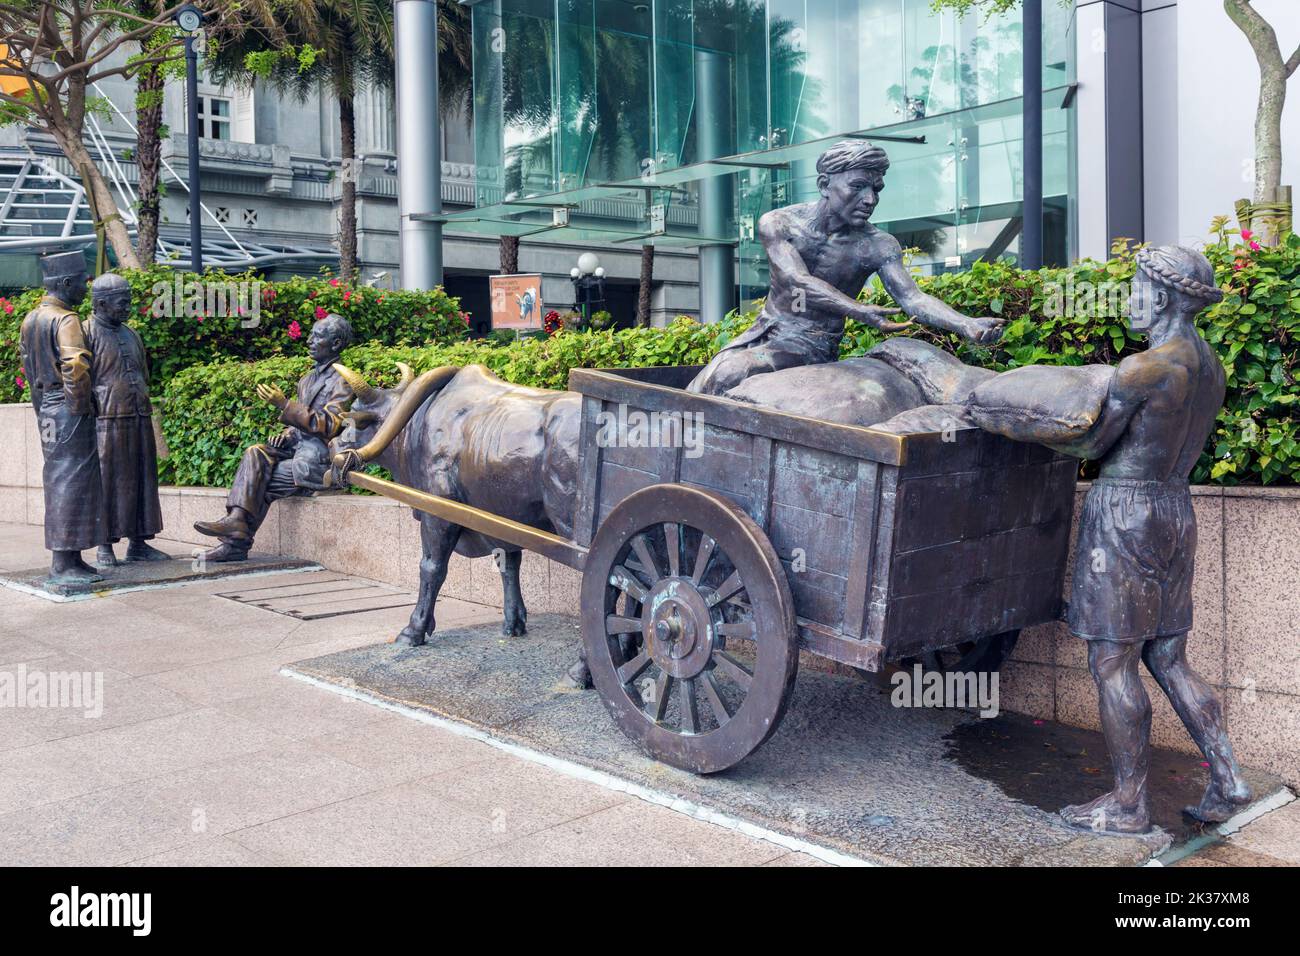 The River Merchants, eine Bronzeskulptur der aus Singapur stammenden chinesischen Künstlerin Aw Tee Hong, 1931 - 2021. Republik Singapur. Kühle laden Säcke hinein Stockfoto